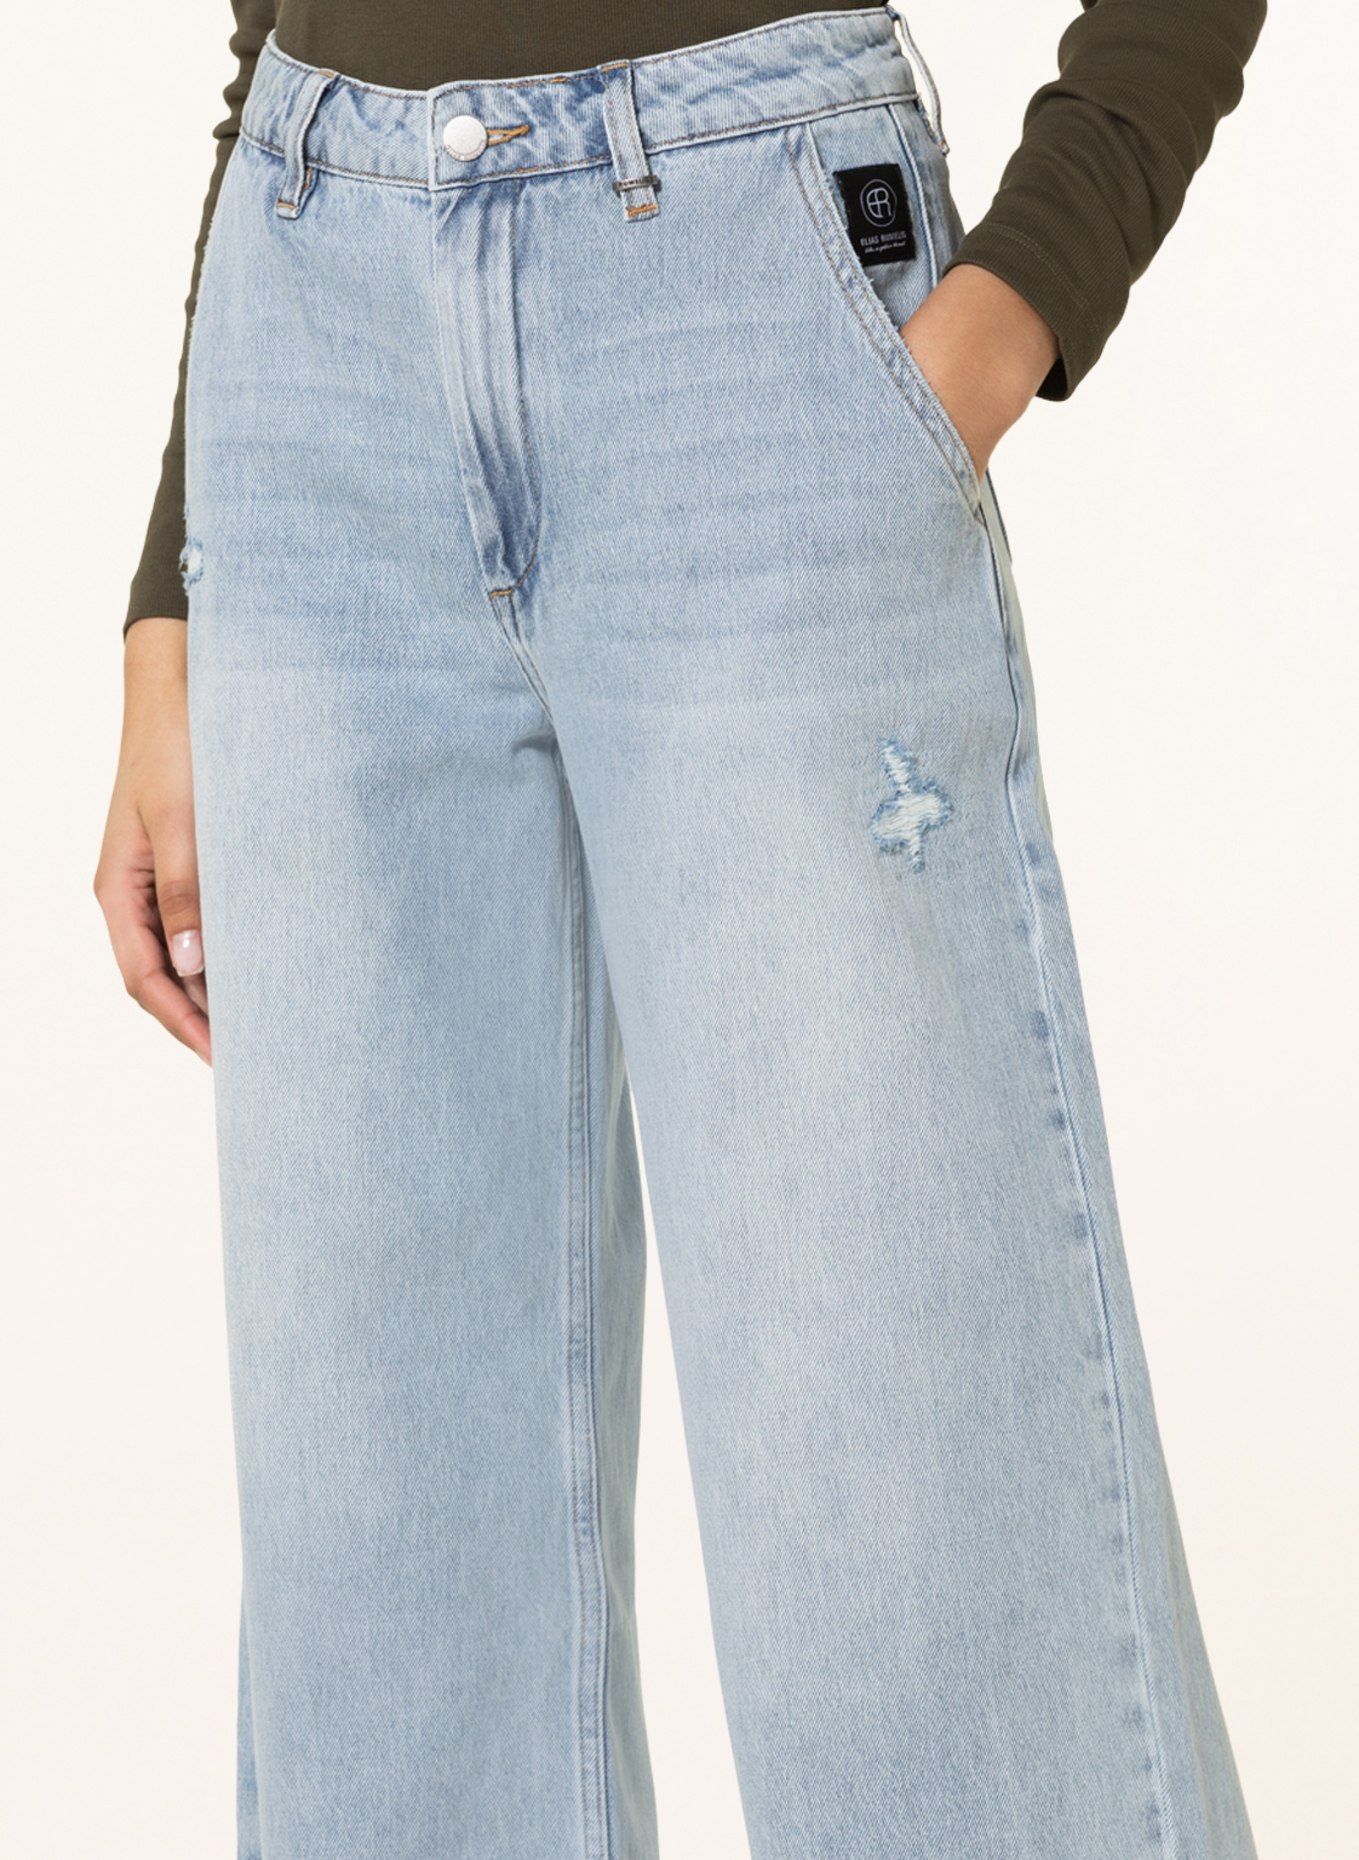 ELIAS RUMELIS 7/8 jeans GISELA, Color: 629 Bleached Vintage Blue (Image 5)